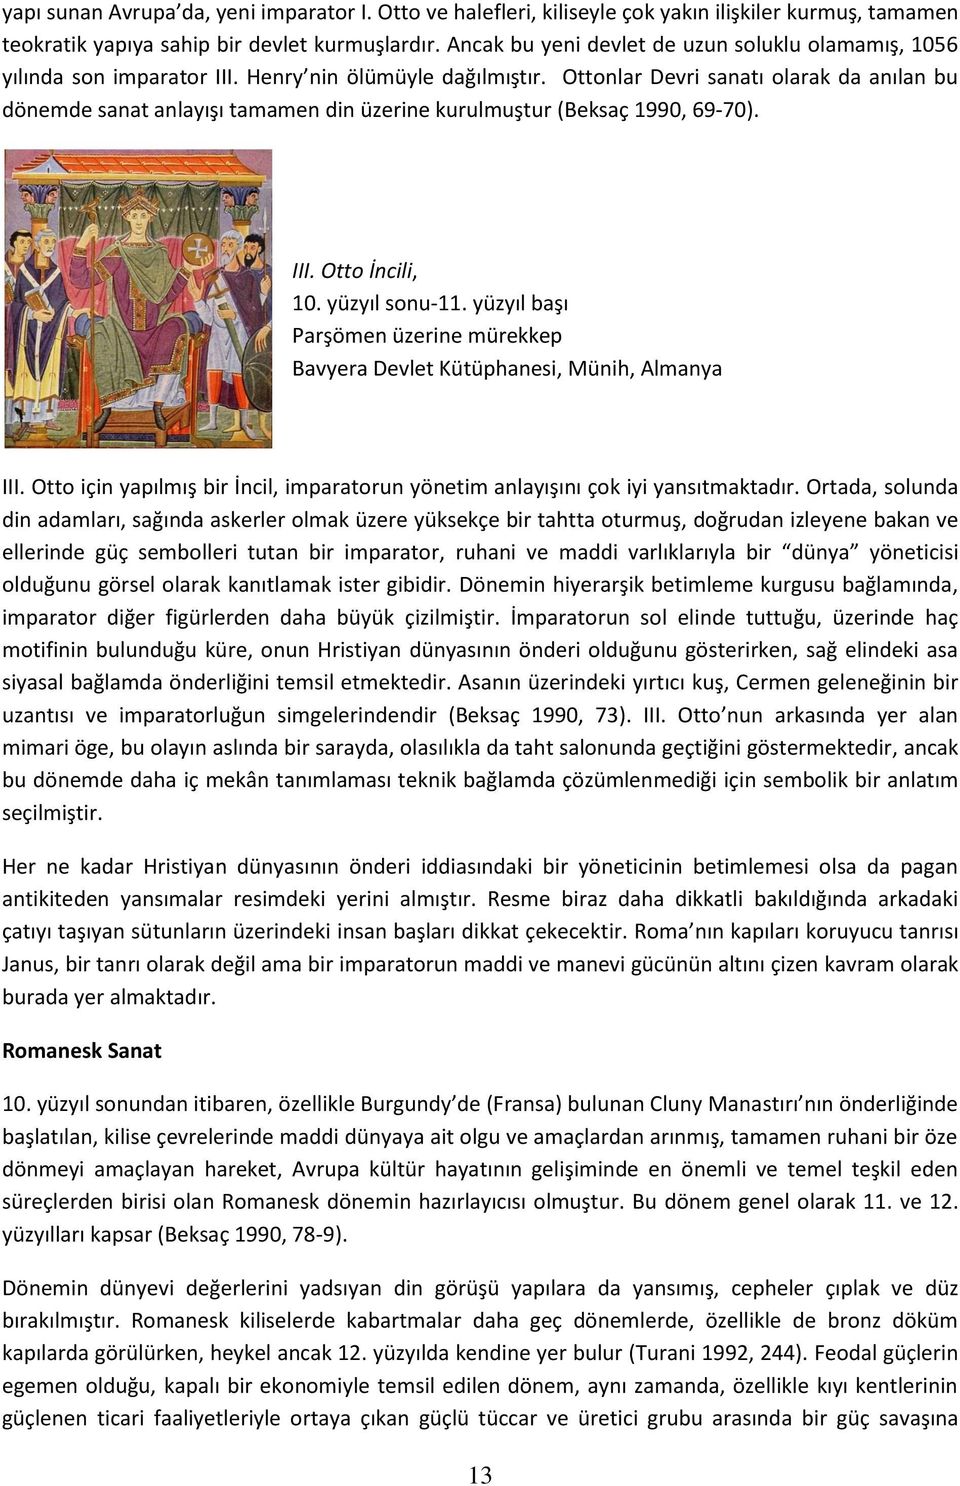 Ottonlar Devri sanatı olarak da anılan bu dönemde sanat anlayışı tamamen din üzerine kurulmuştur (Beksaç 1990, 69-70). III. Otto İncili, 10. yüzyıl sonu-11.